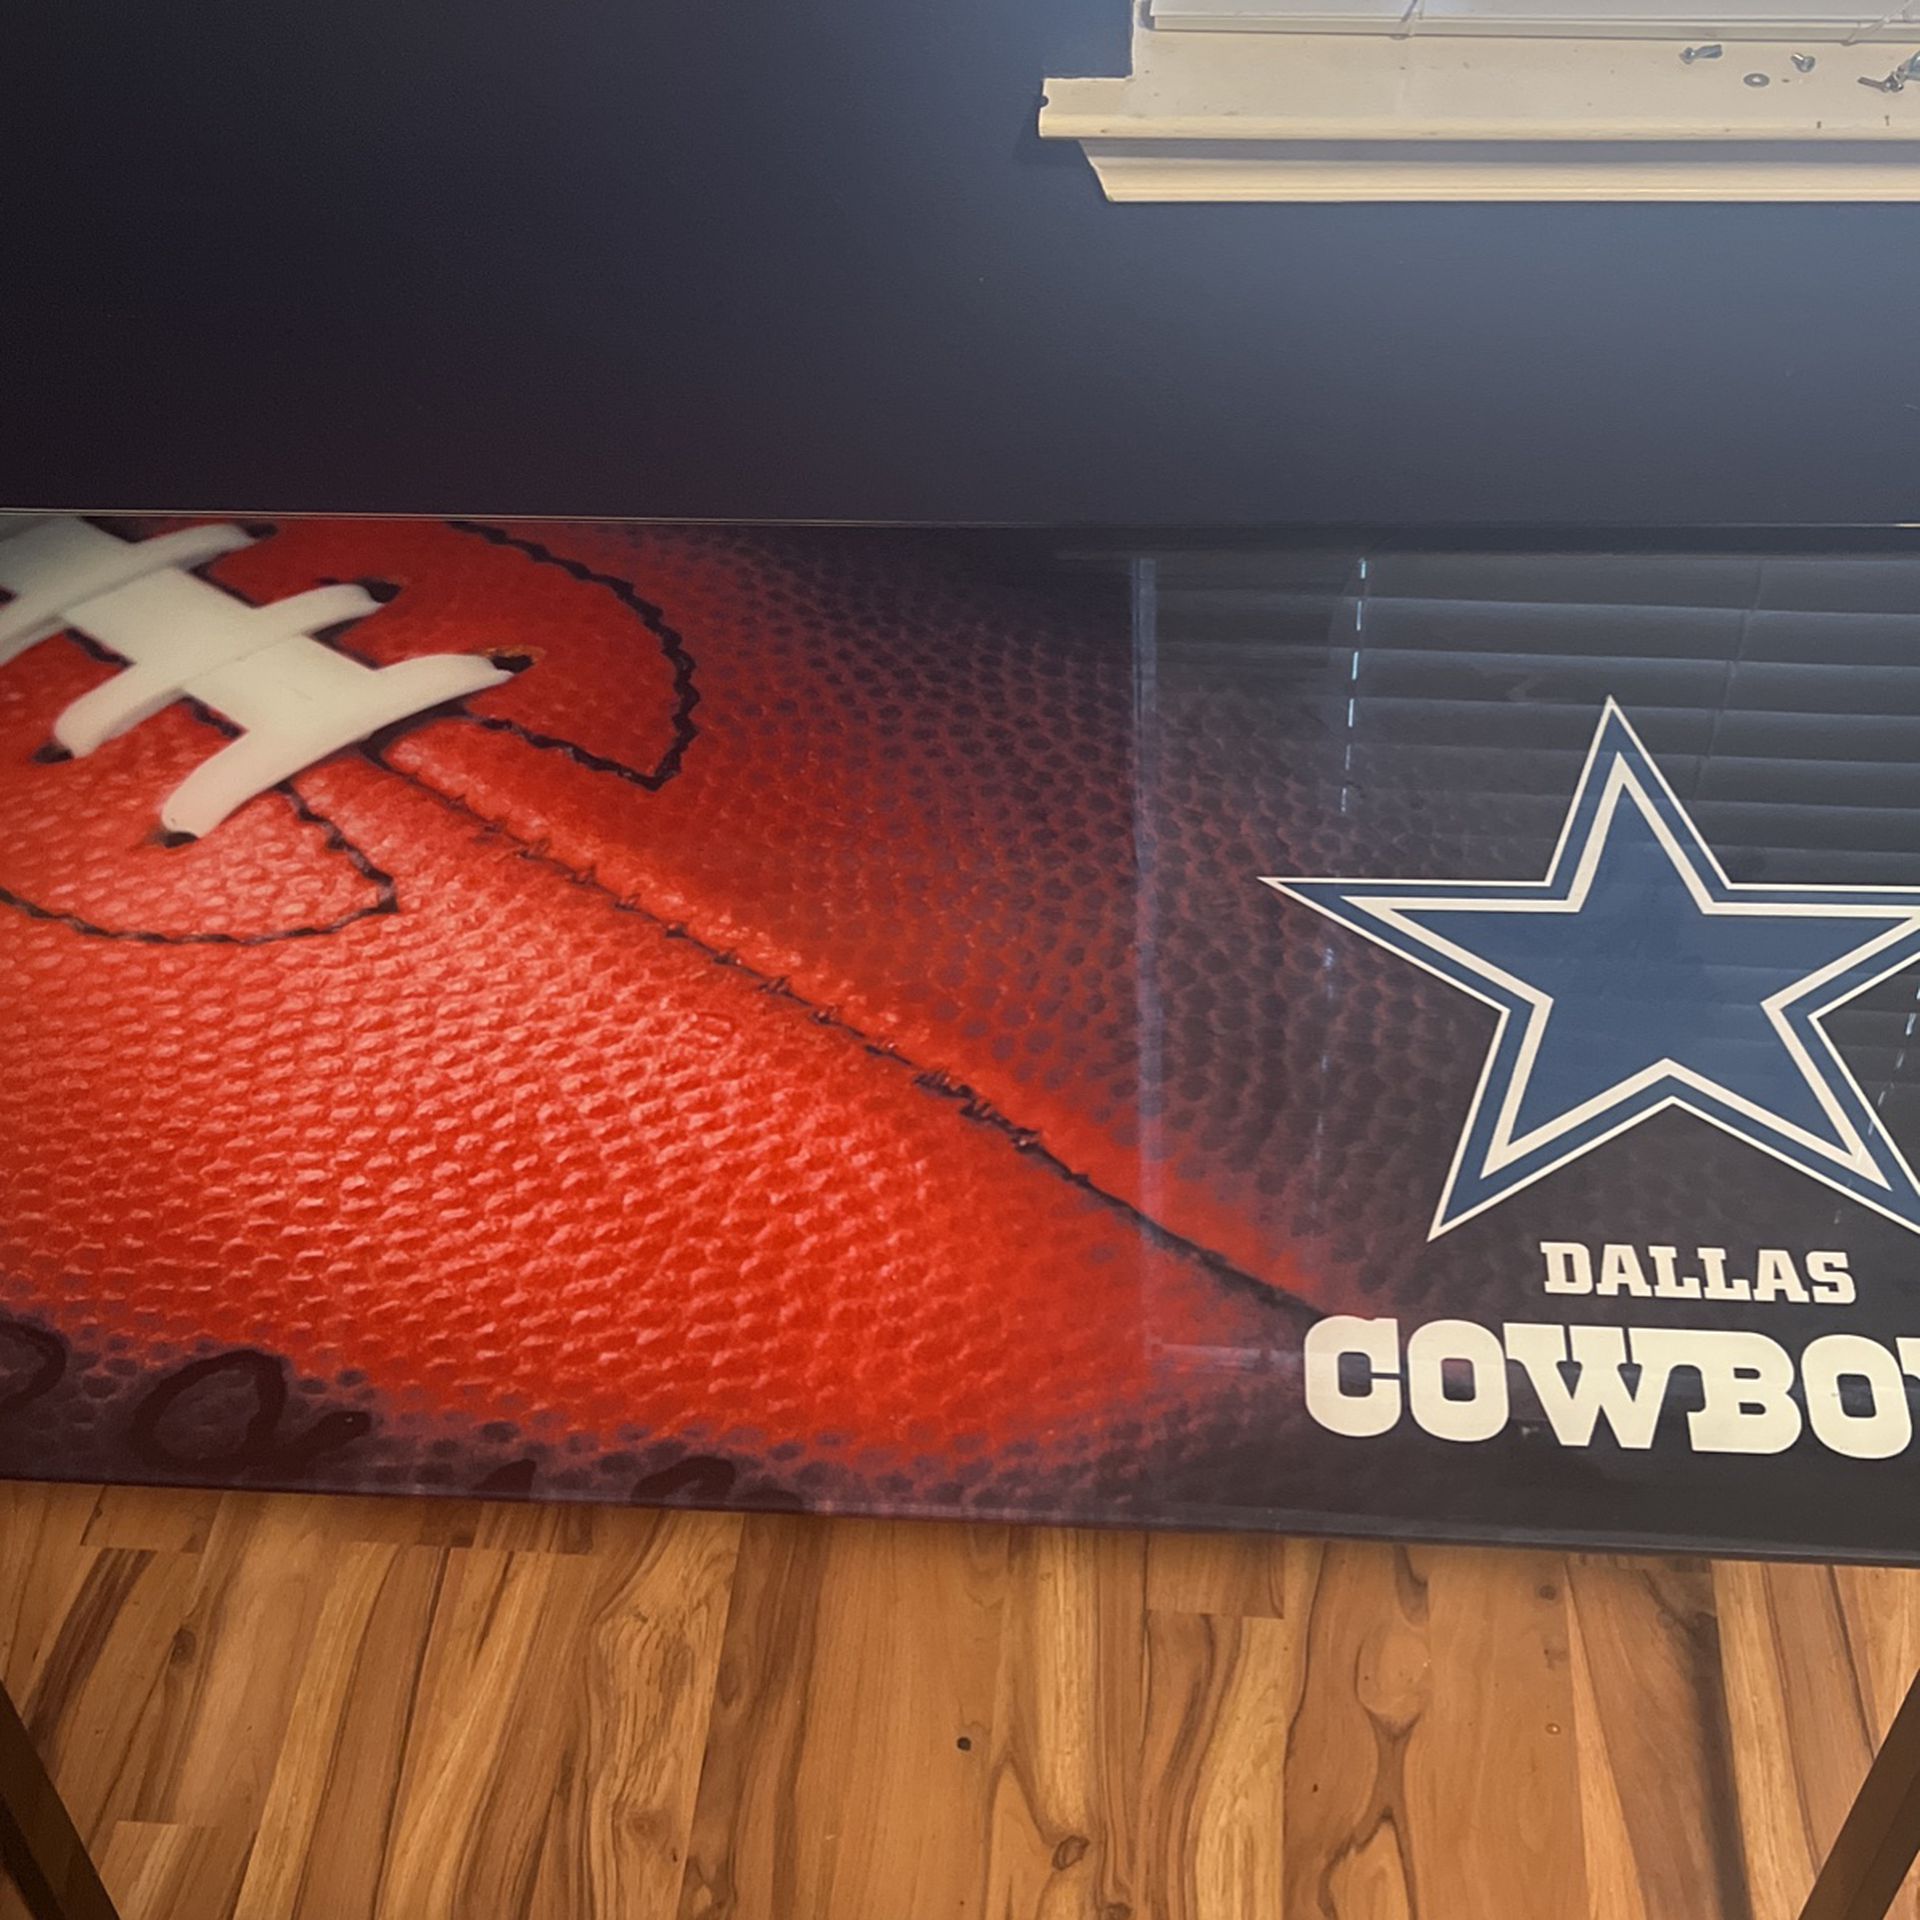 Dallas Cowboys glass desk/table.